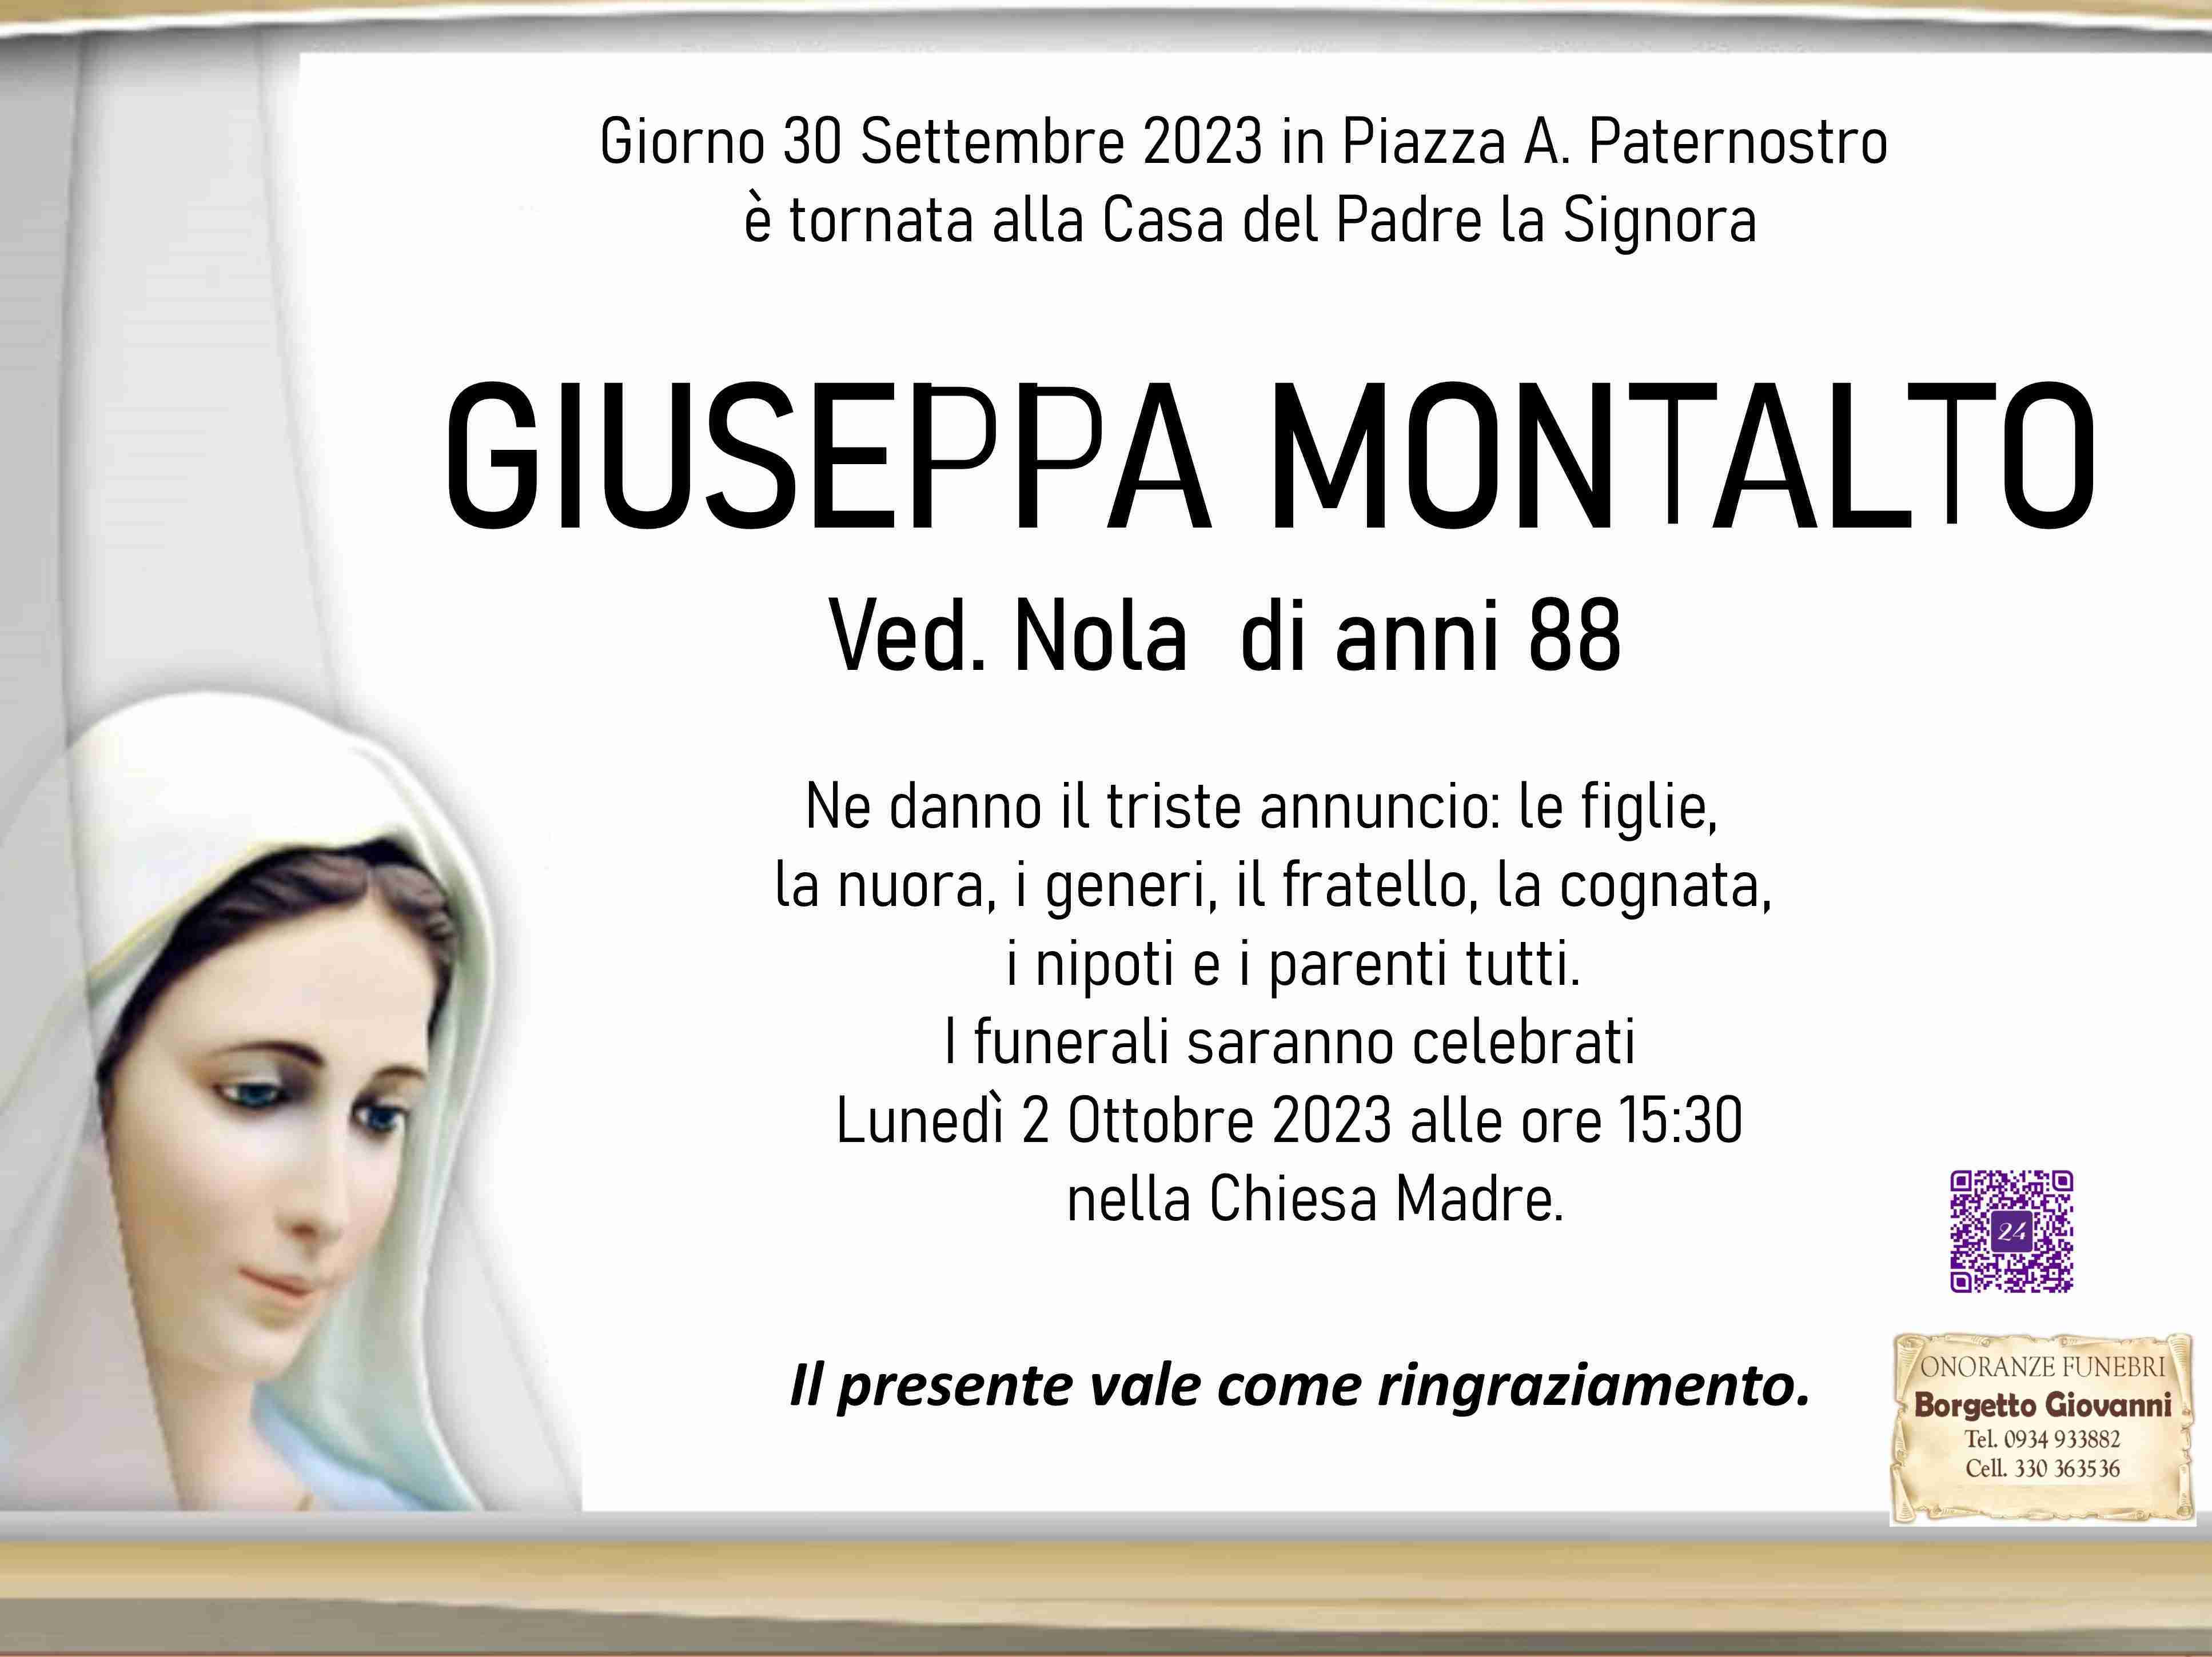 Giuseppa Montalto